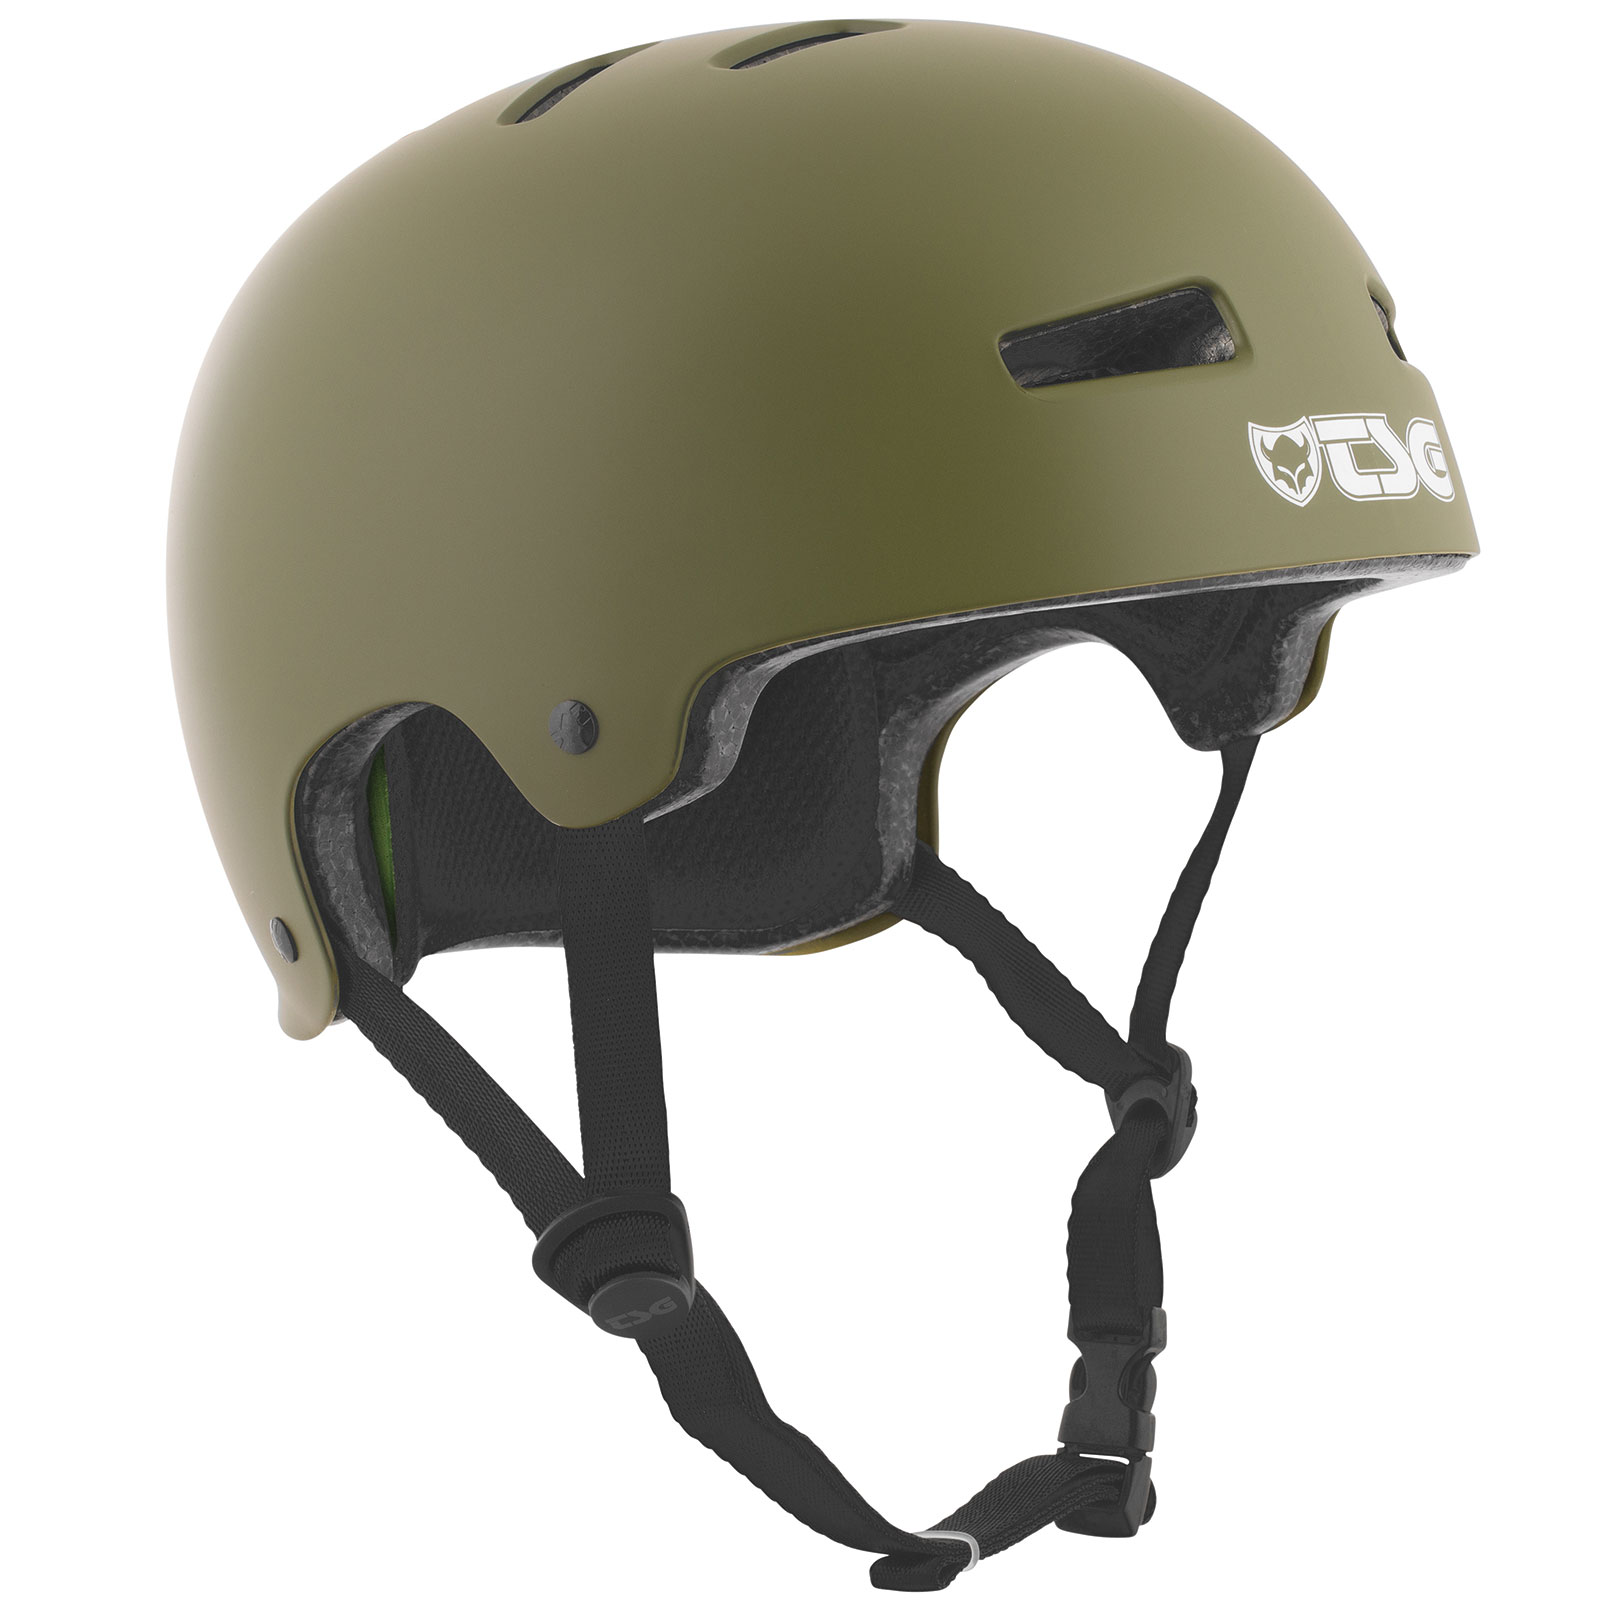 TSG Helm Evolution Solid Color (satin olive)